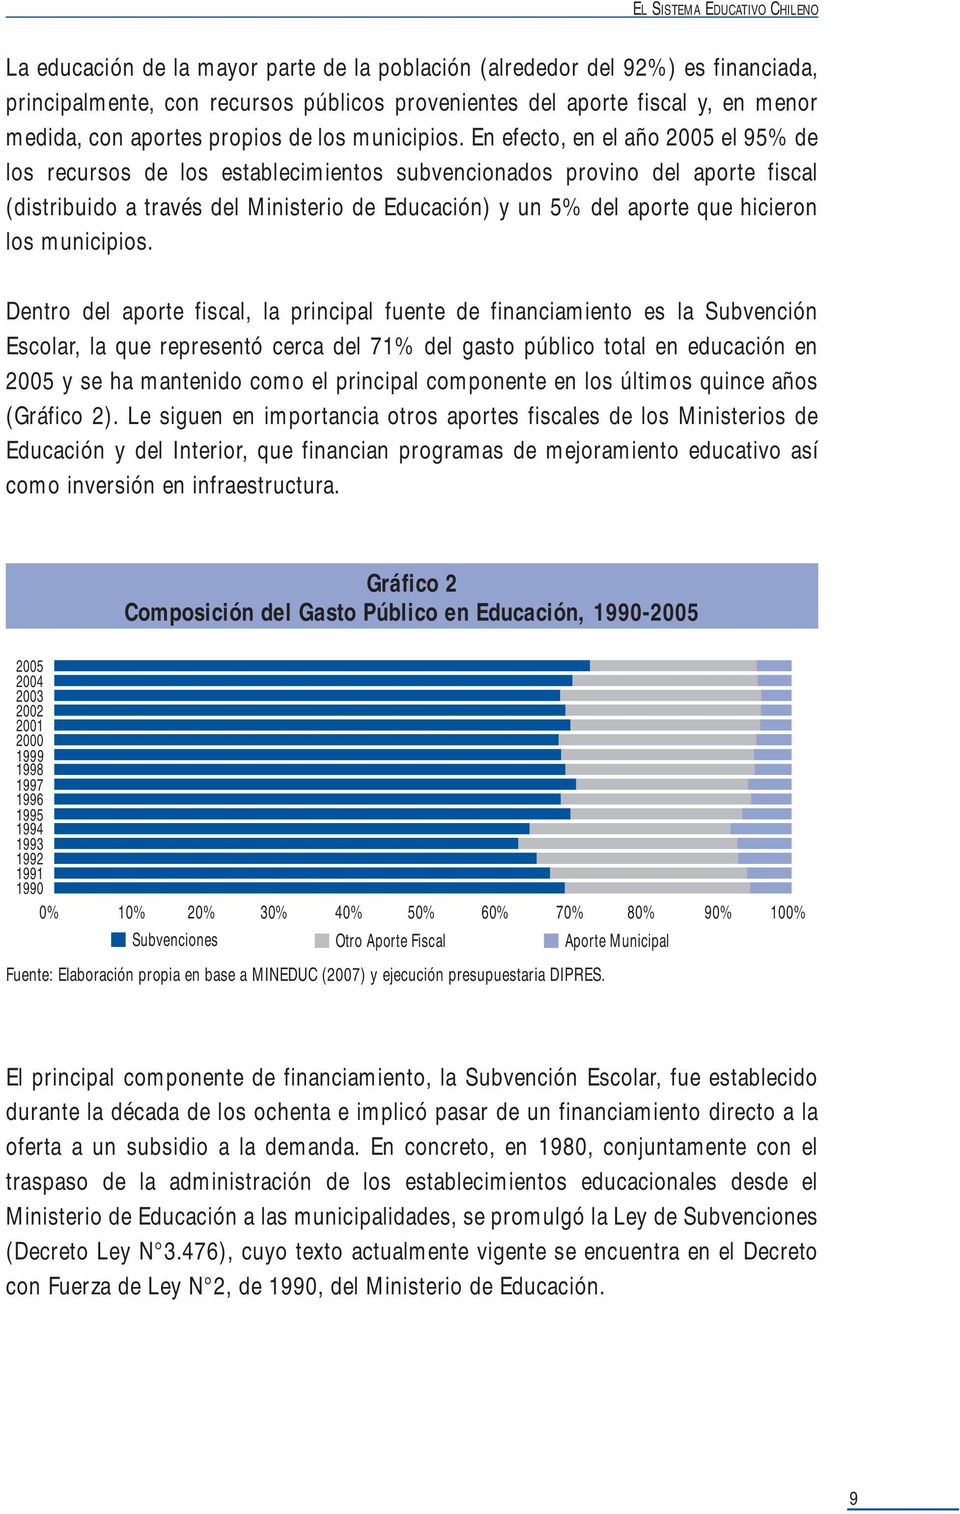 En efecto, en el año 2005 el 95% de los recursos de los establecimientos subvencionados provino del aporte fiscal (distribuido a través del Ministerio de Educación) y un 5% del aporte que hicieron